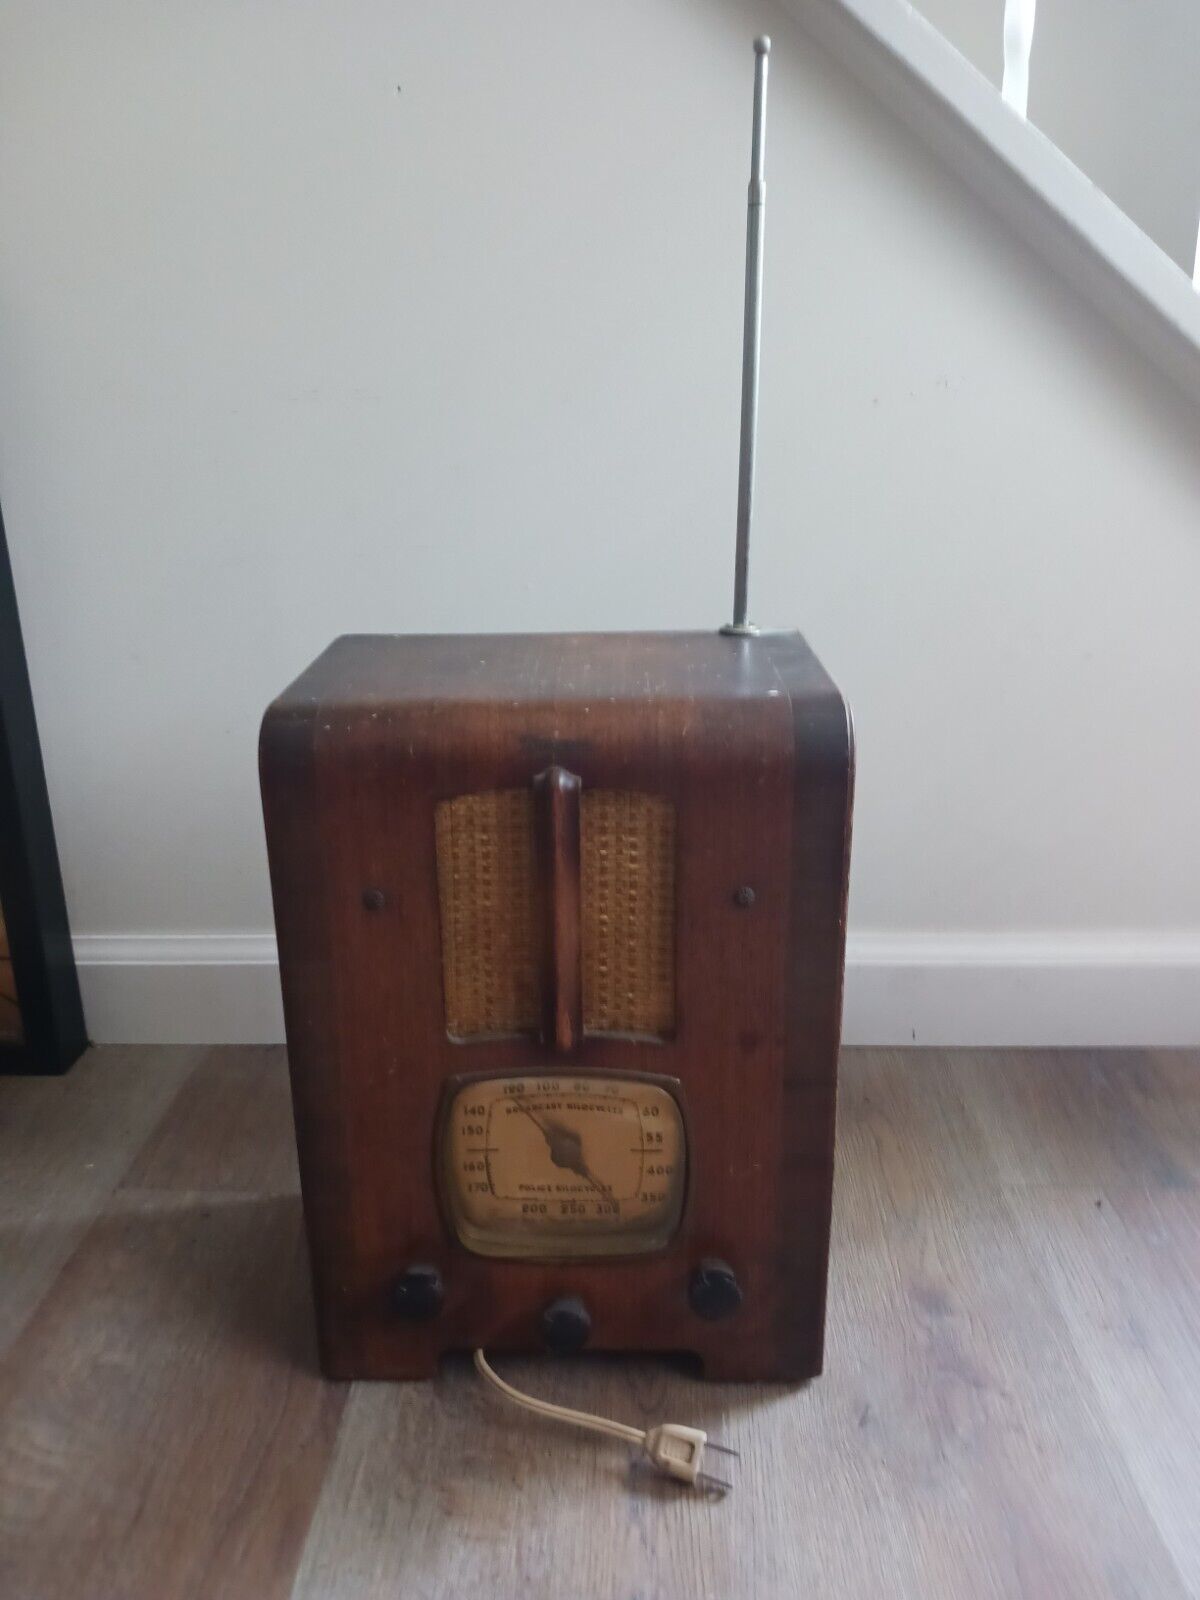 Rare Find 1930's deco EMERSON wooden tombstone radio restore/decor